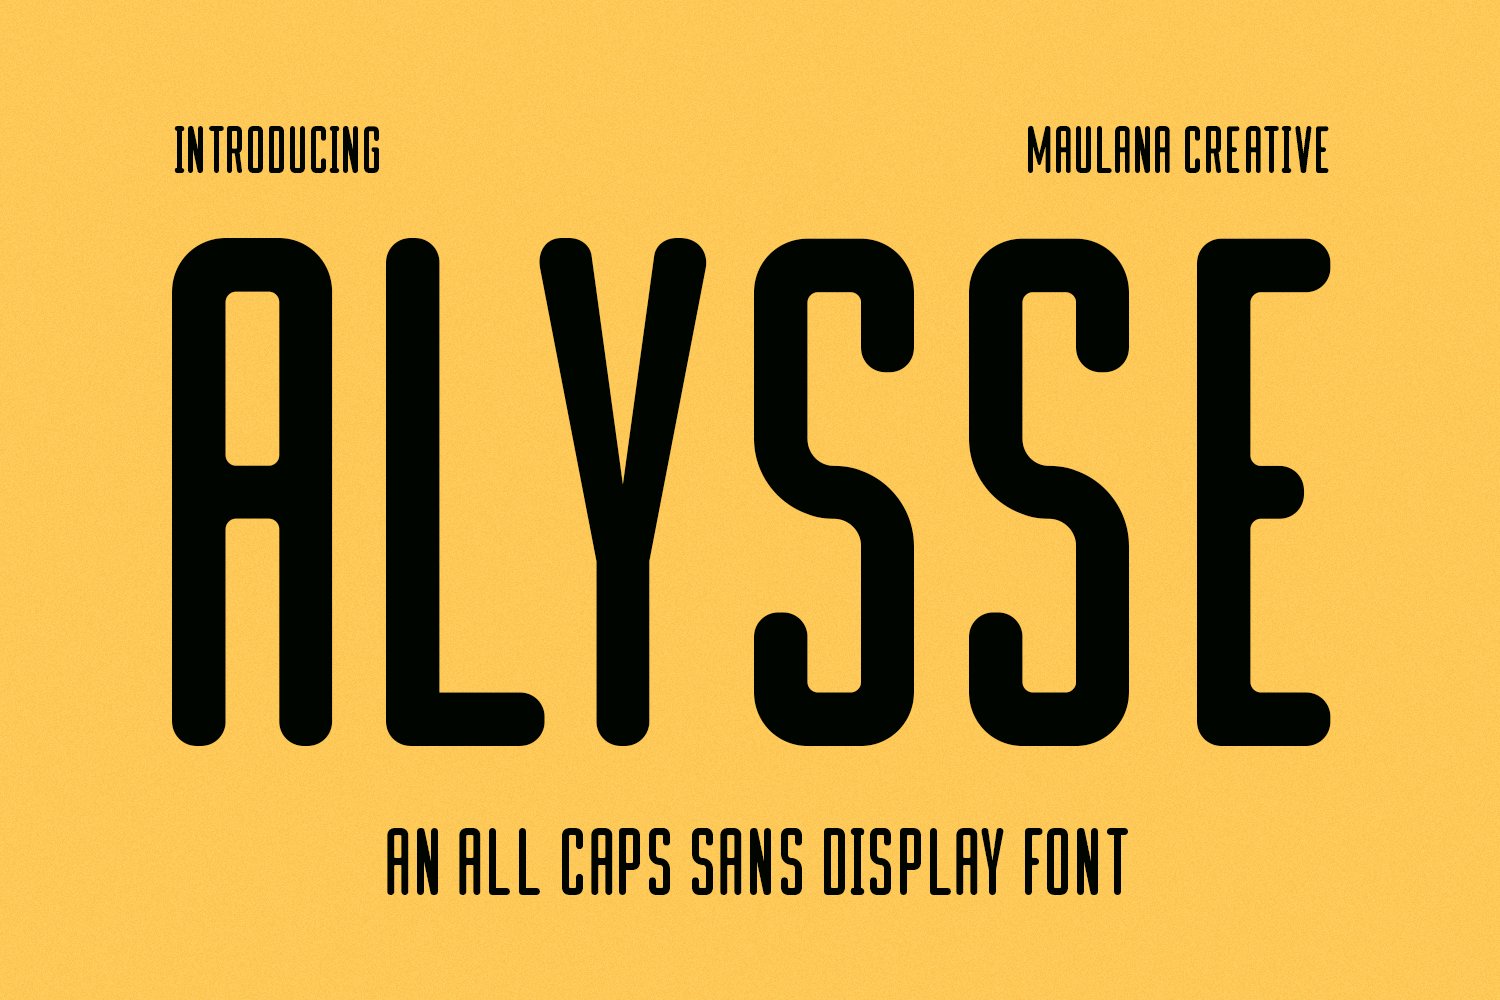 Alysse Sans Display Font cover image.